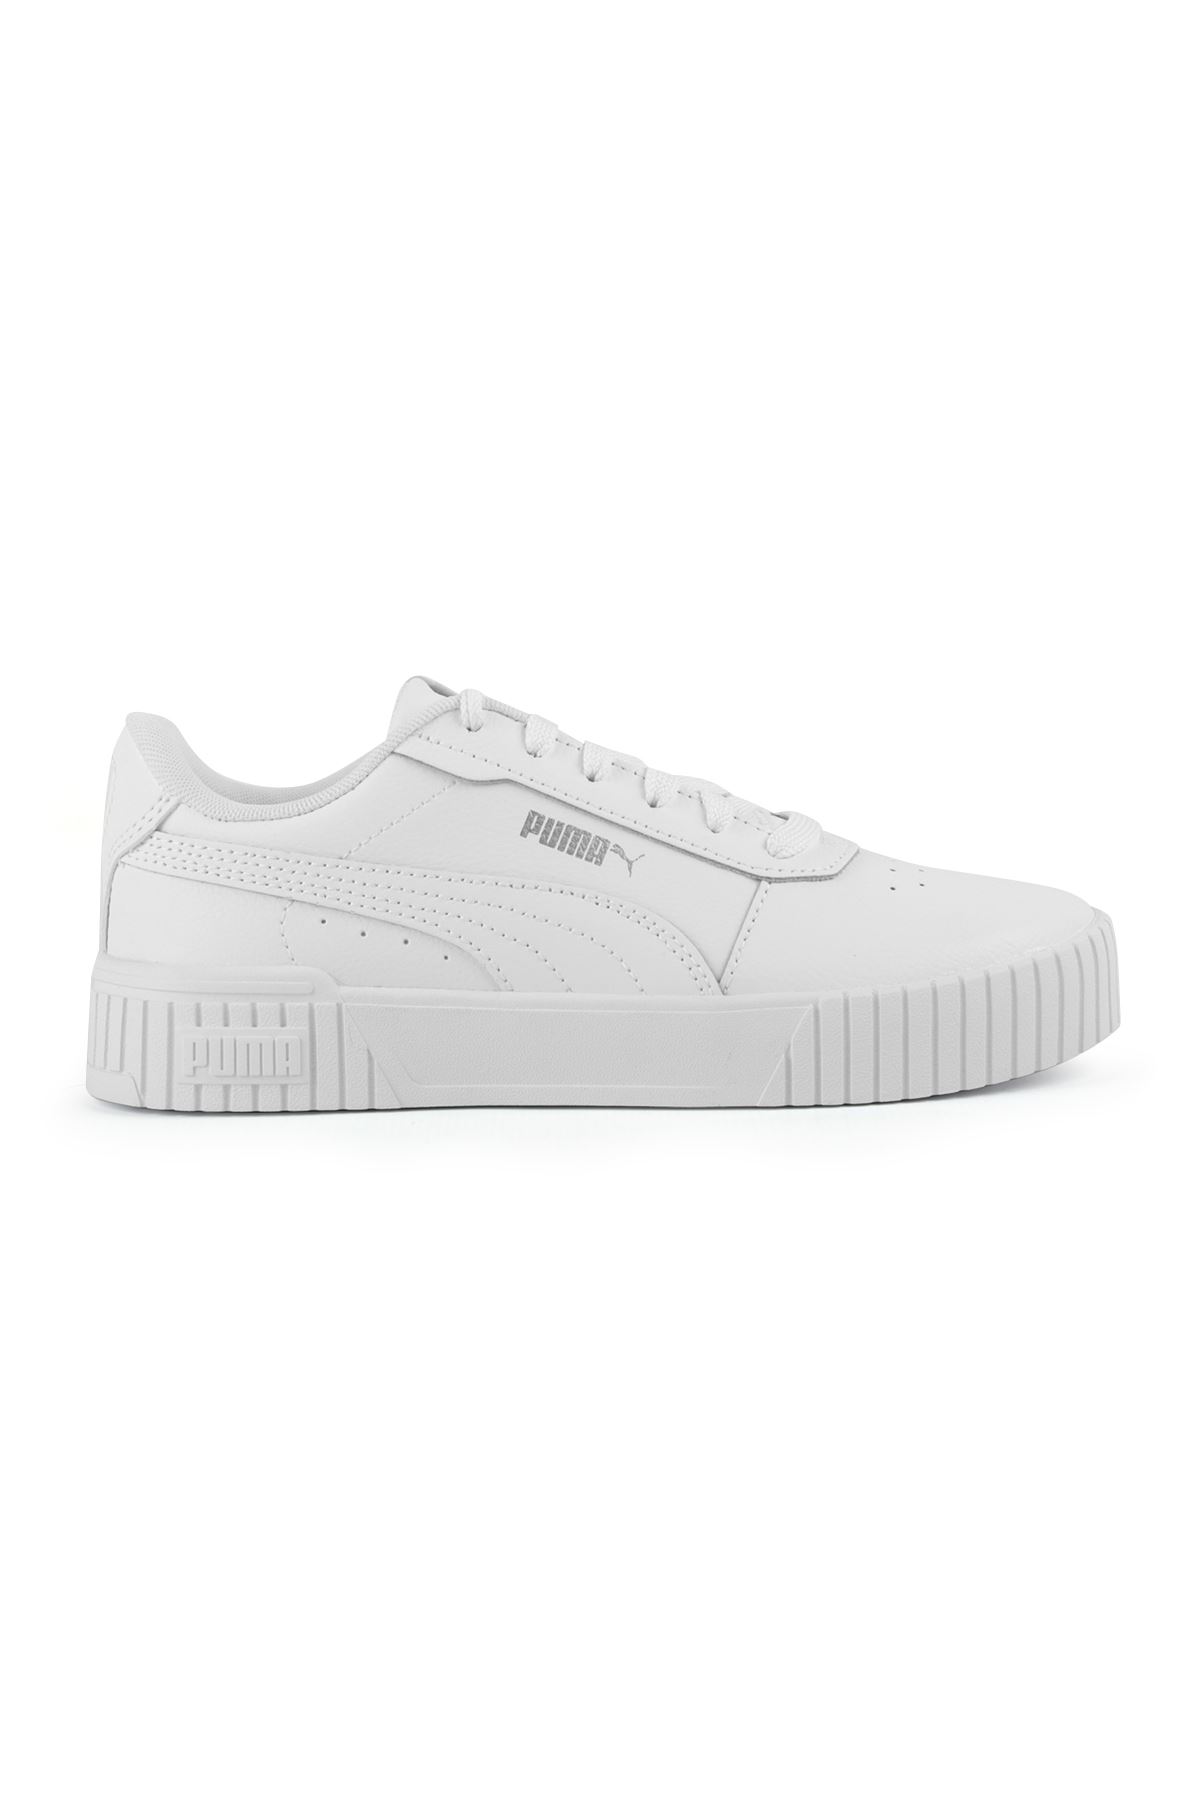 Puma Carine 2.0 Beyaz Erkek Spor Ayakkabı 